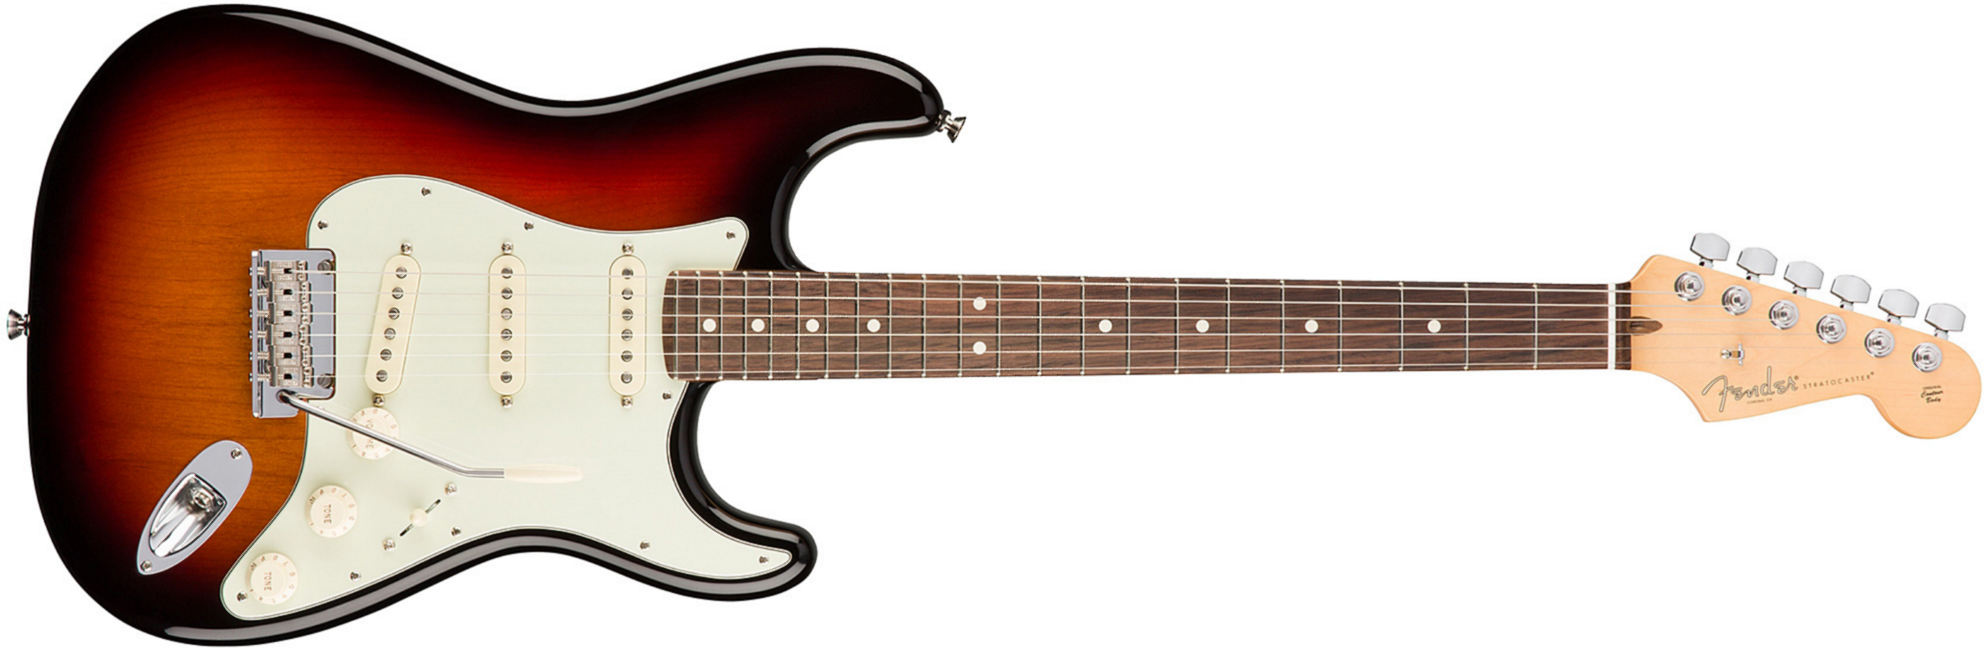 Fender Strat American Professional 2017 3s Usa Rw - 3-color Sunburst - E-Gitarre in Str-Form - Main picture